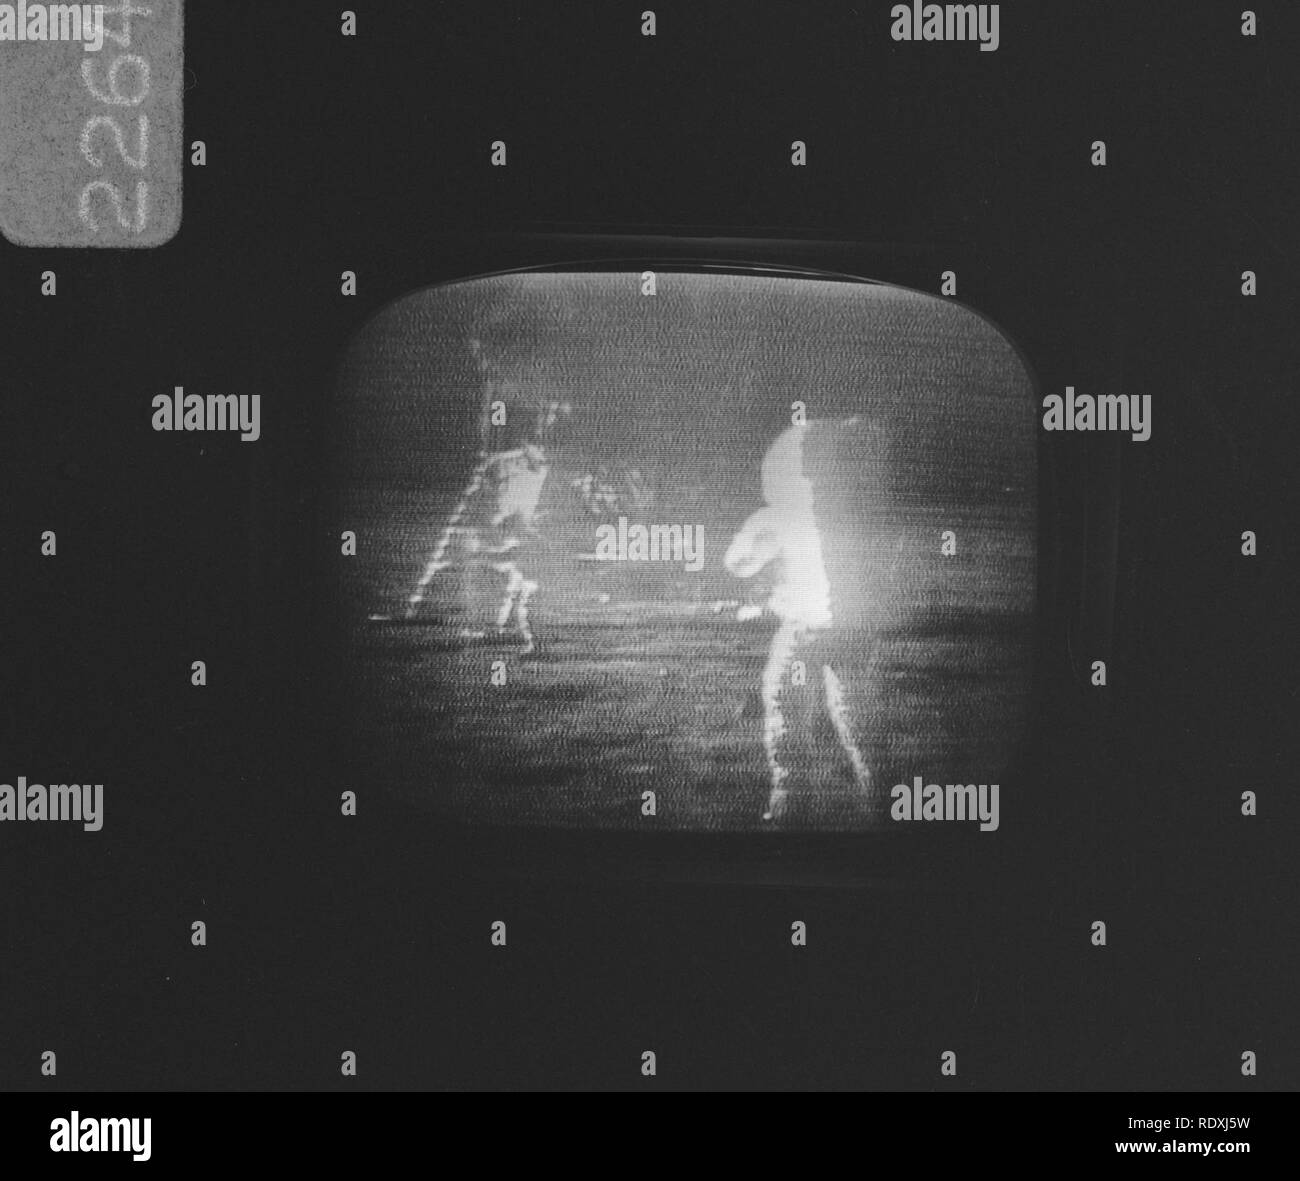 Armstrong en Aldrin op de maan, Bestanddeelnr 922-6492. Stock Photo